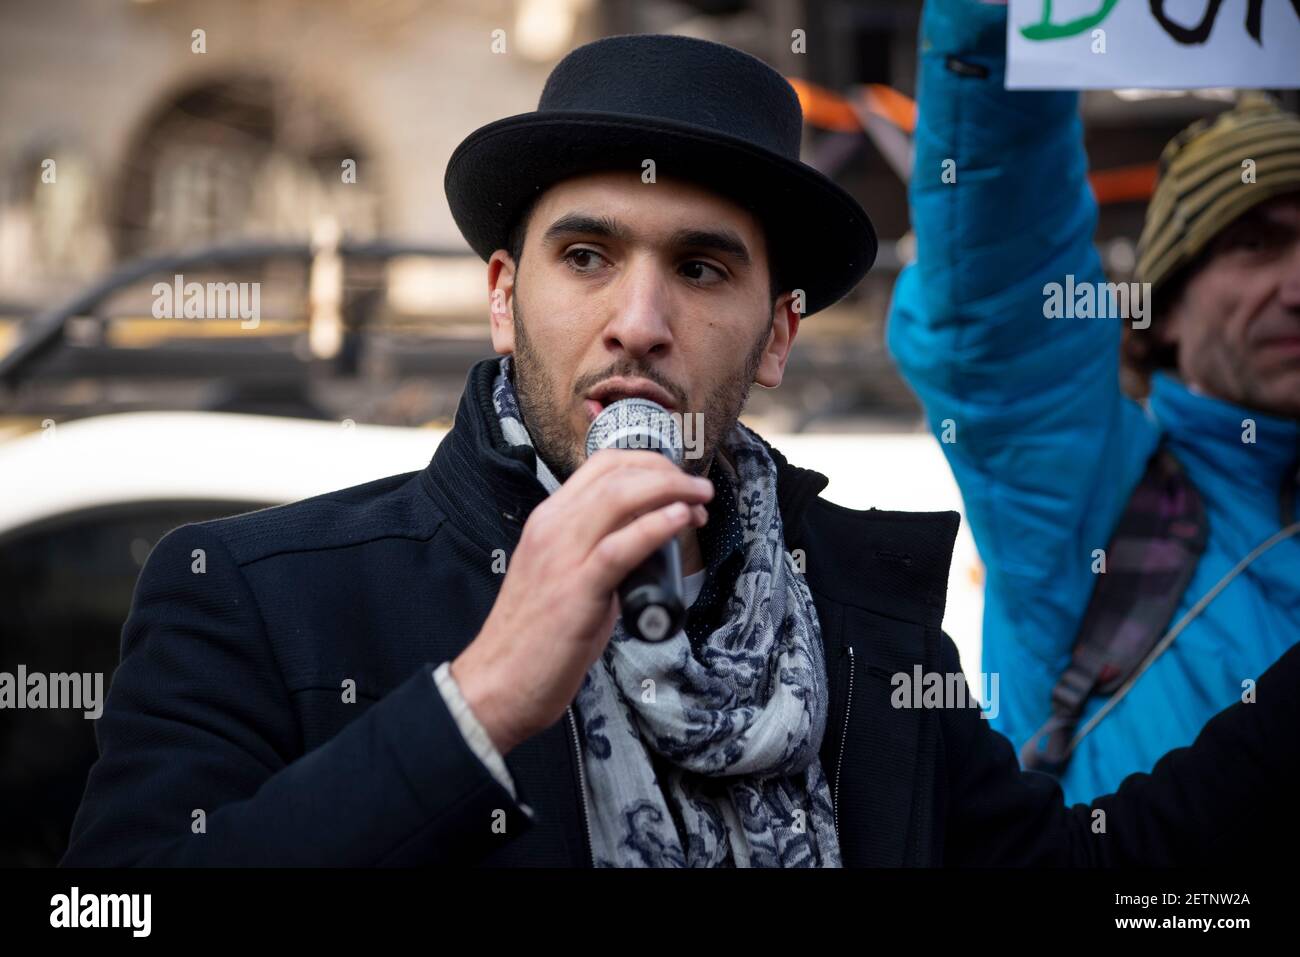 Paris, France 2016. Un activiste politique s'adresse à la foule lors d'une manifestation contre l'état d'urgence Banque D'Images